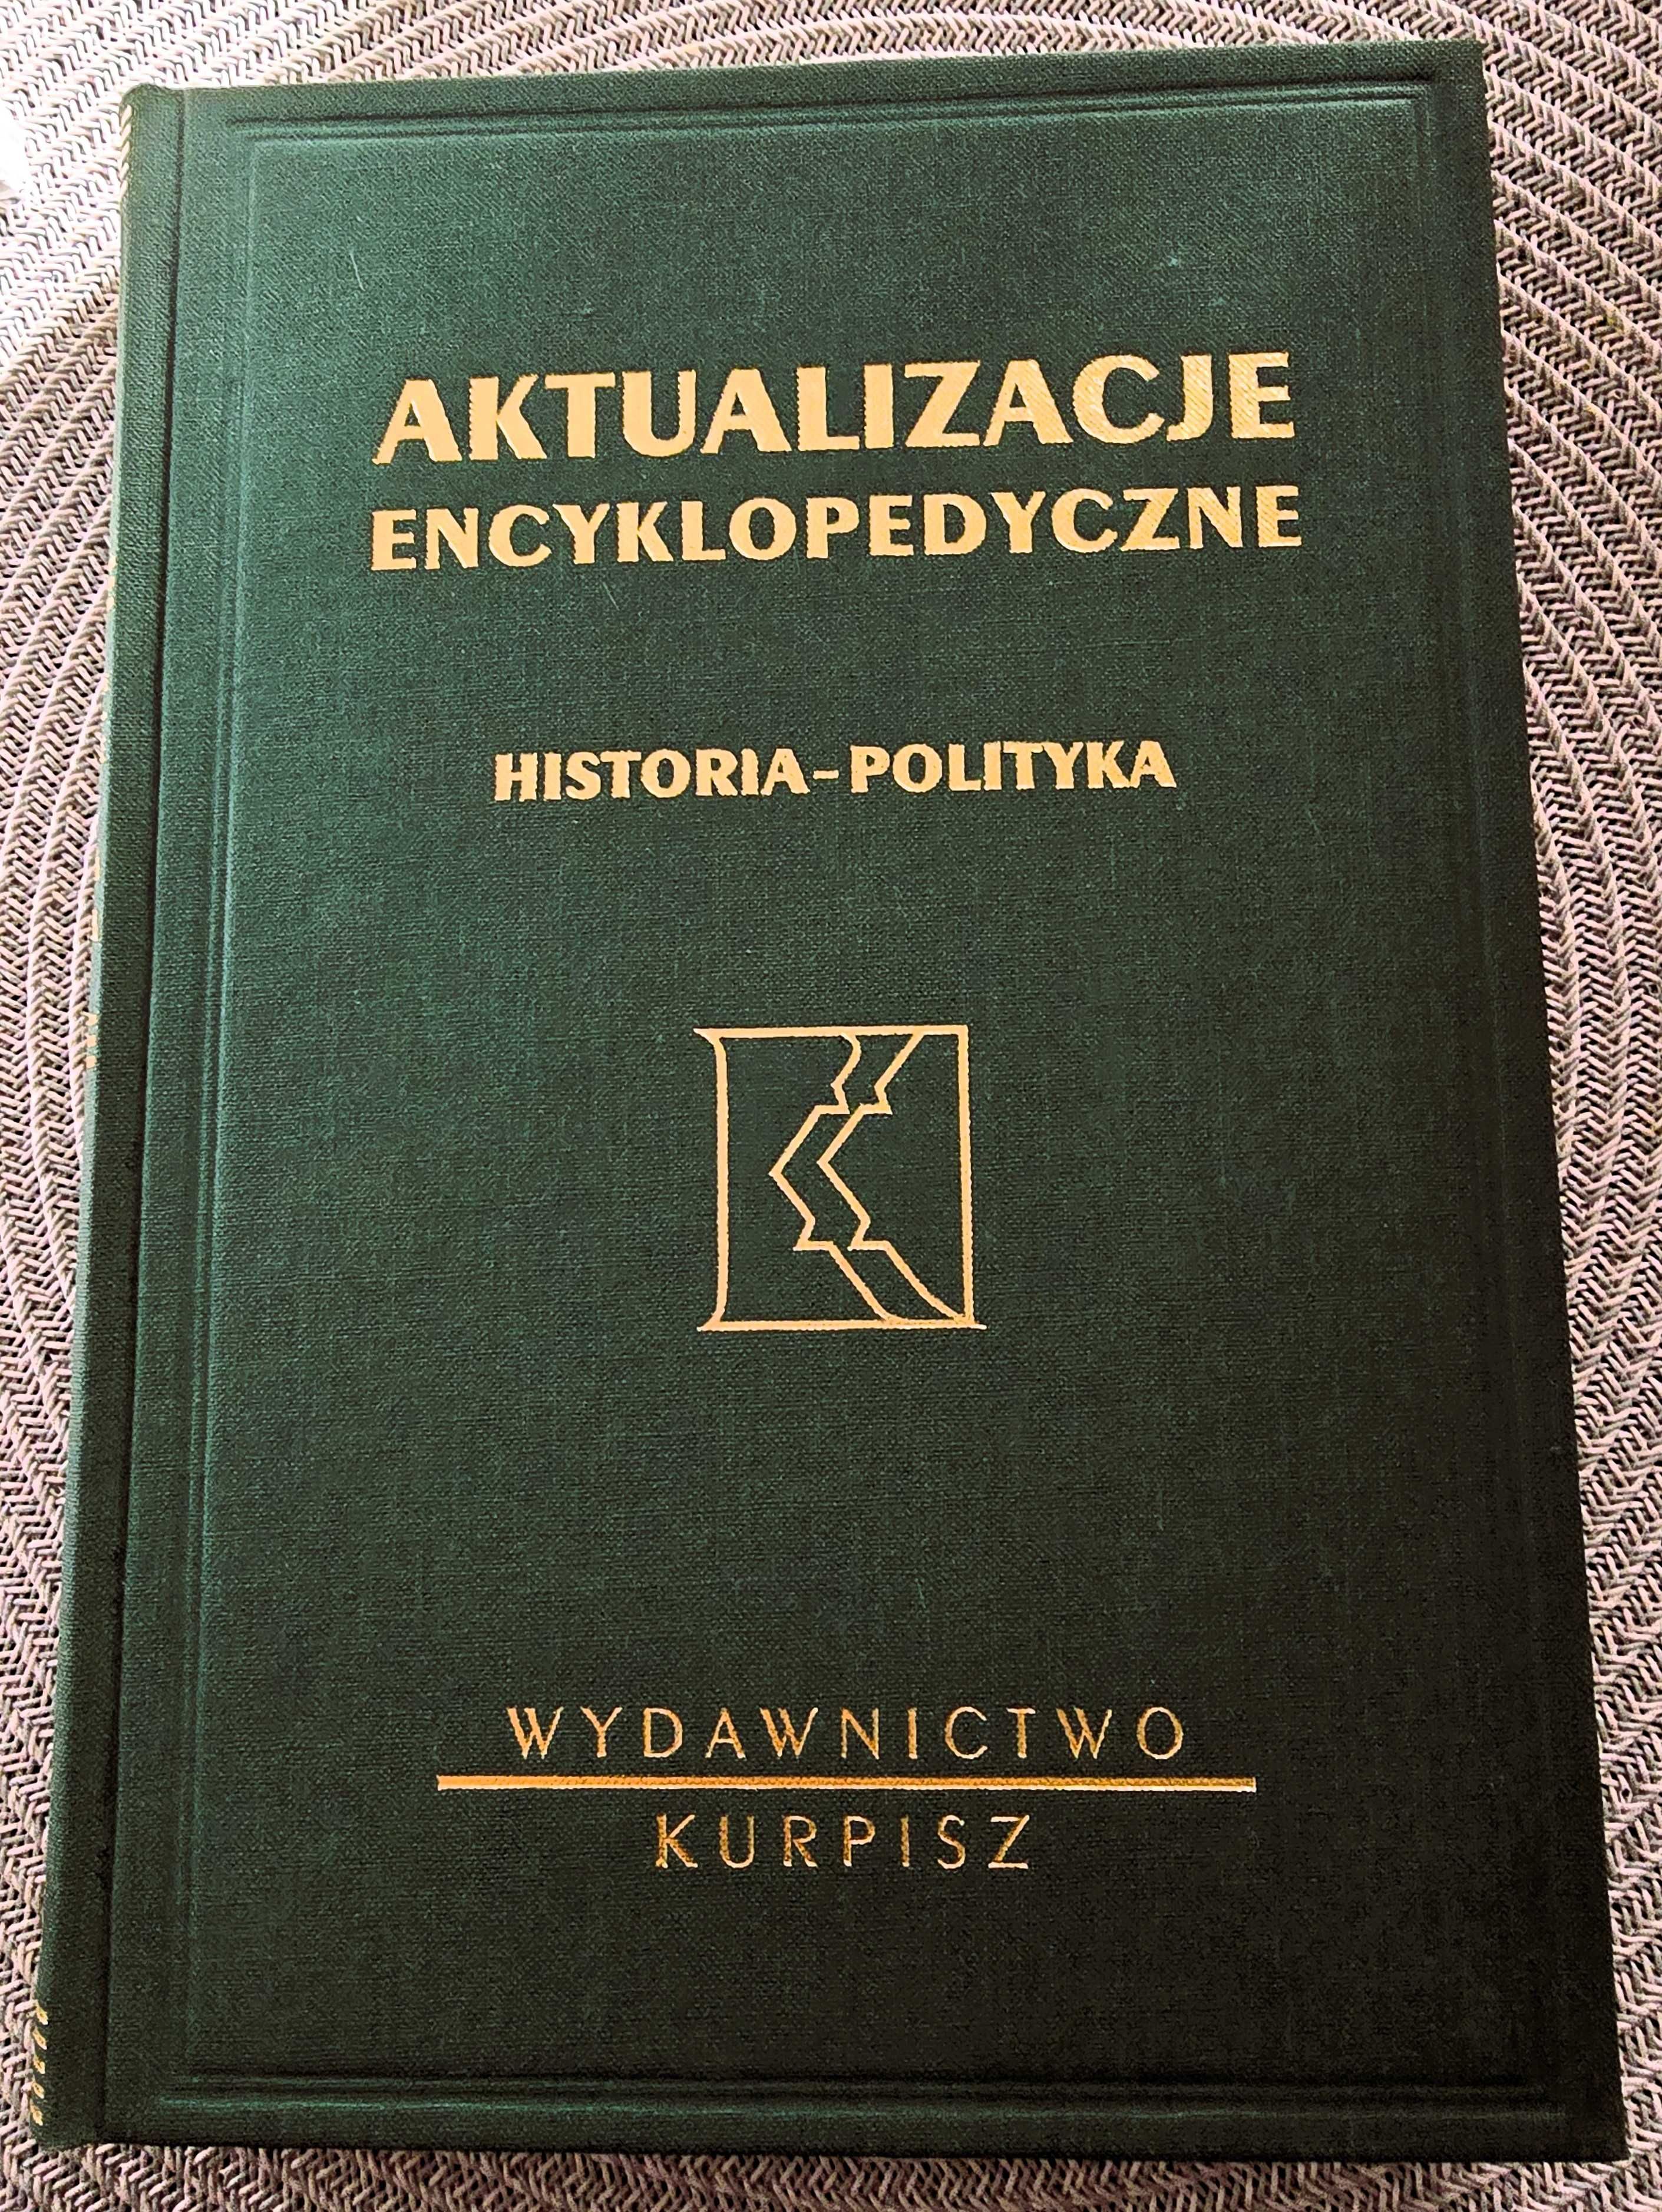 Encyklopedia Powszechna Wydawnictwa Gutenberga z uaktualnieniem